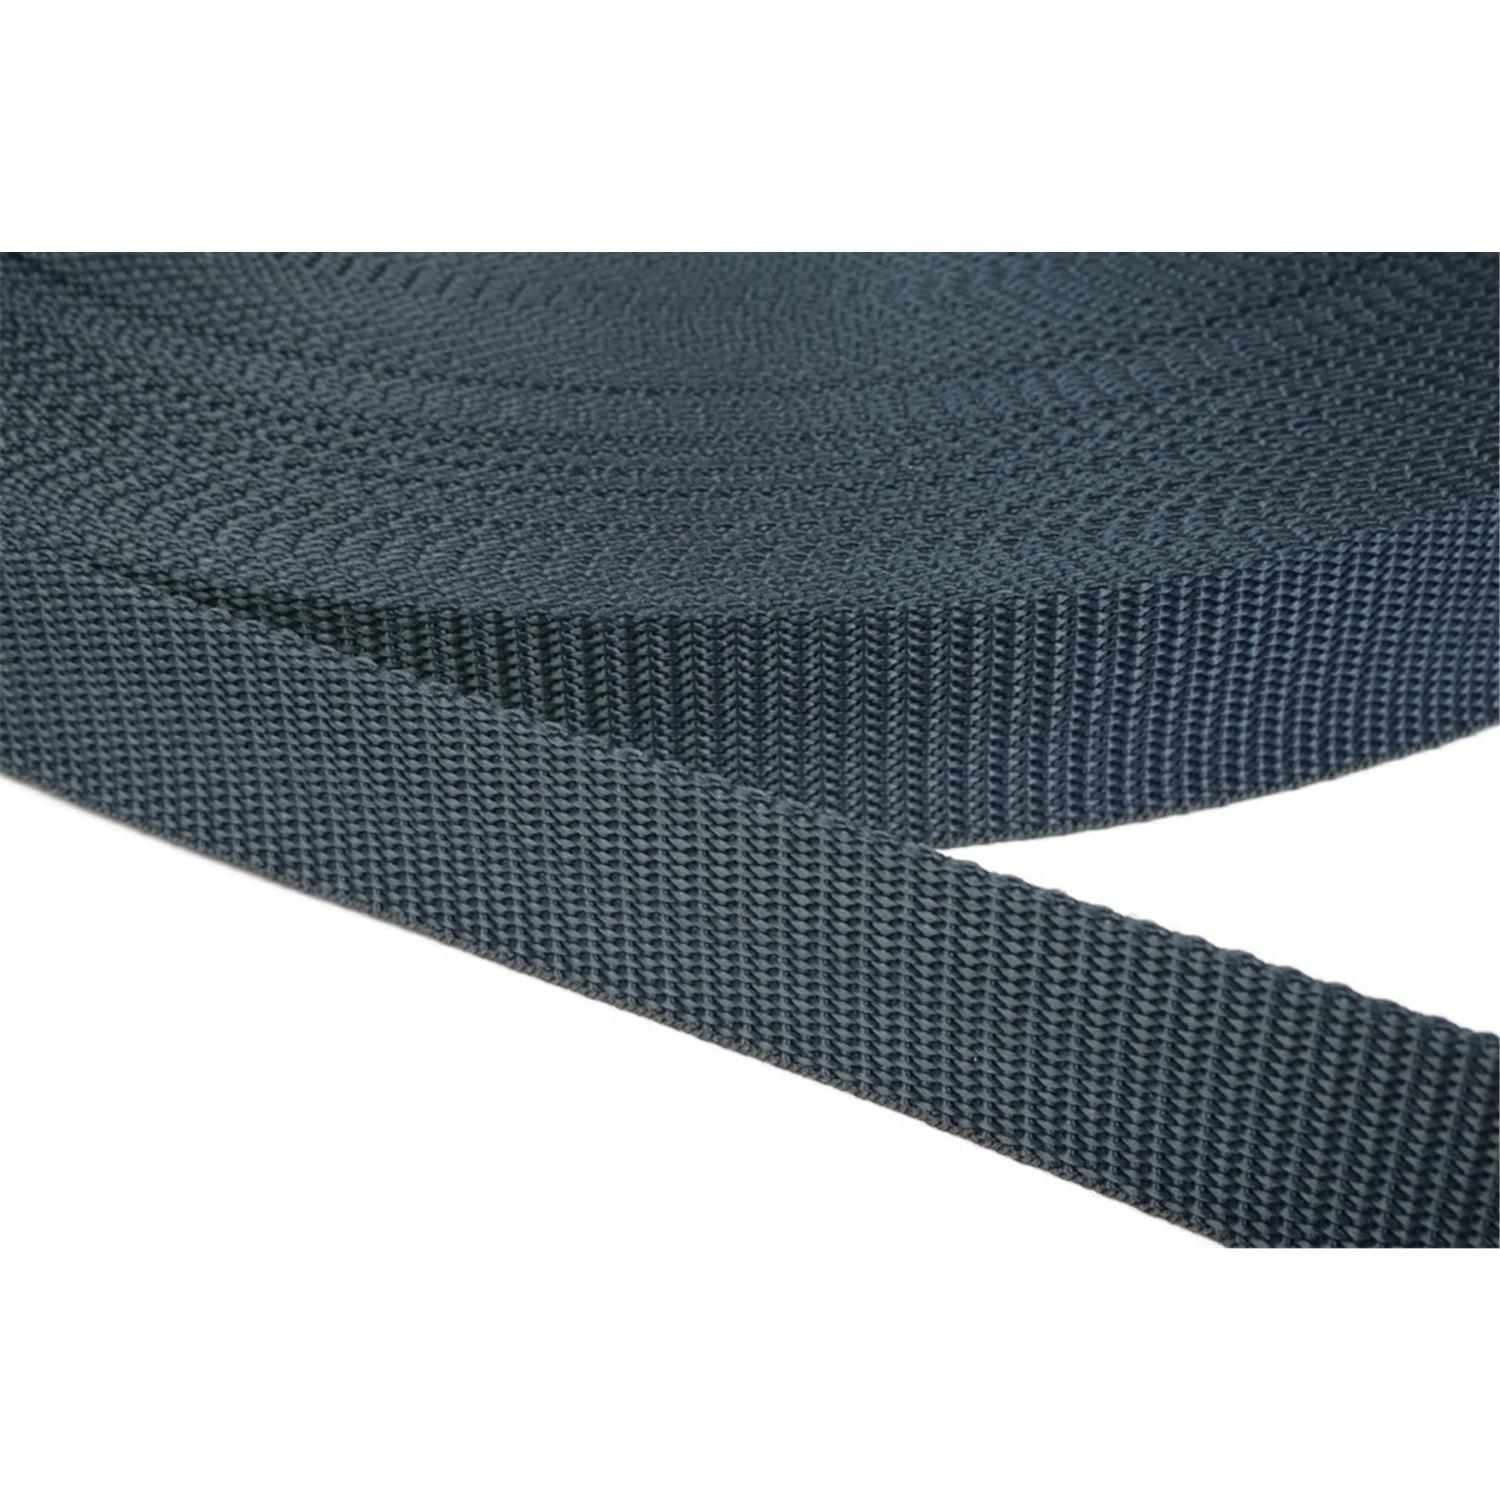 Gurtband 40mm breit aus Polypropylen in 41 Farben 40 - dunkelgrau/blau 6 Meter